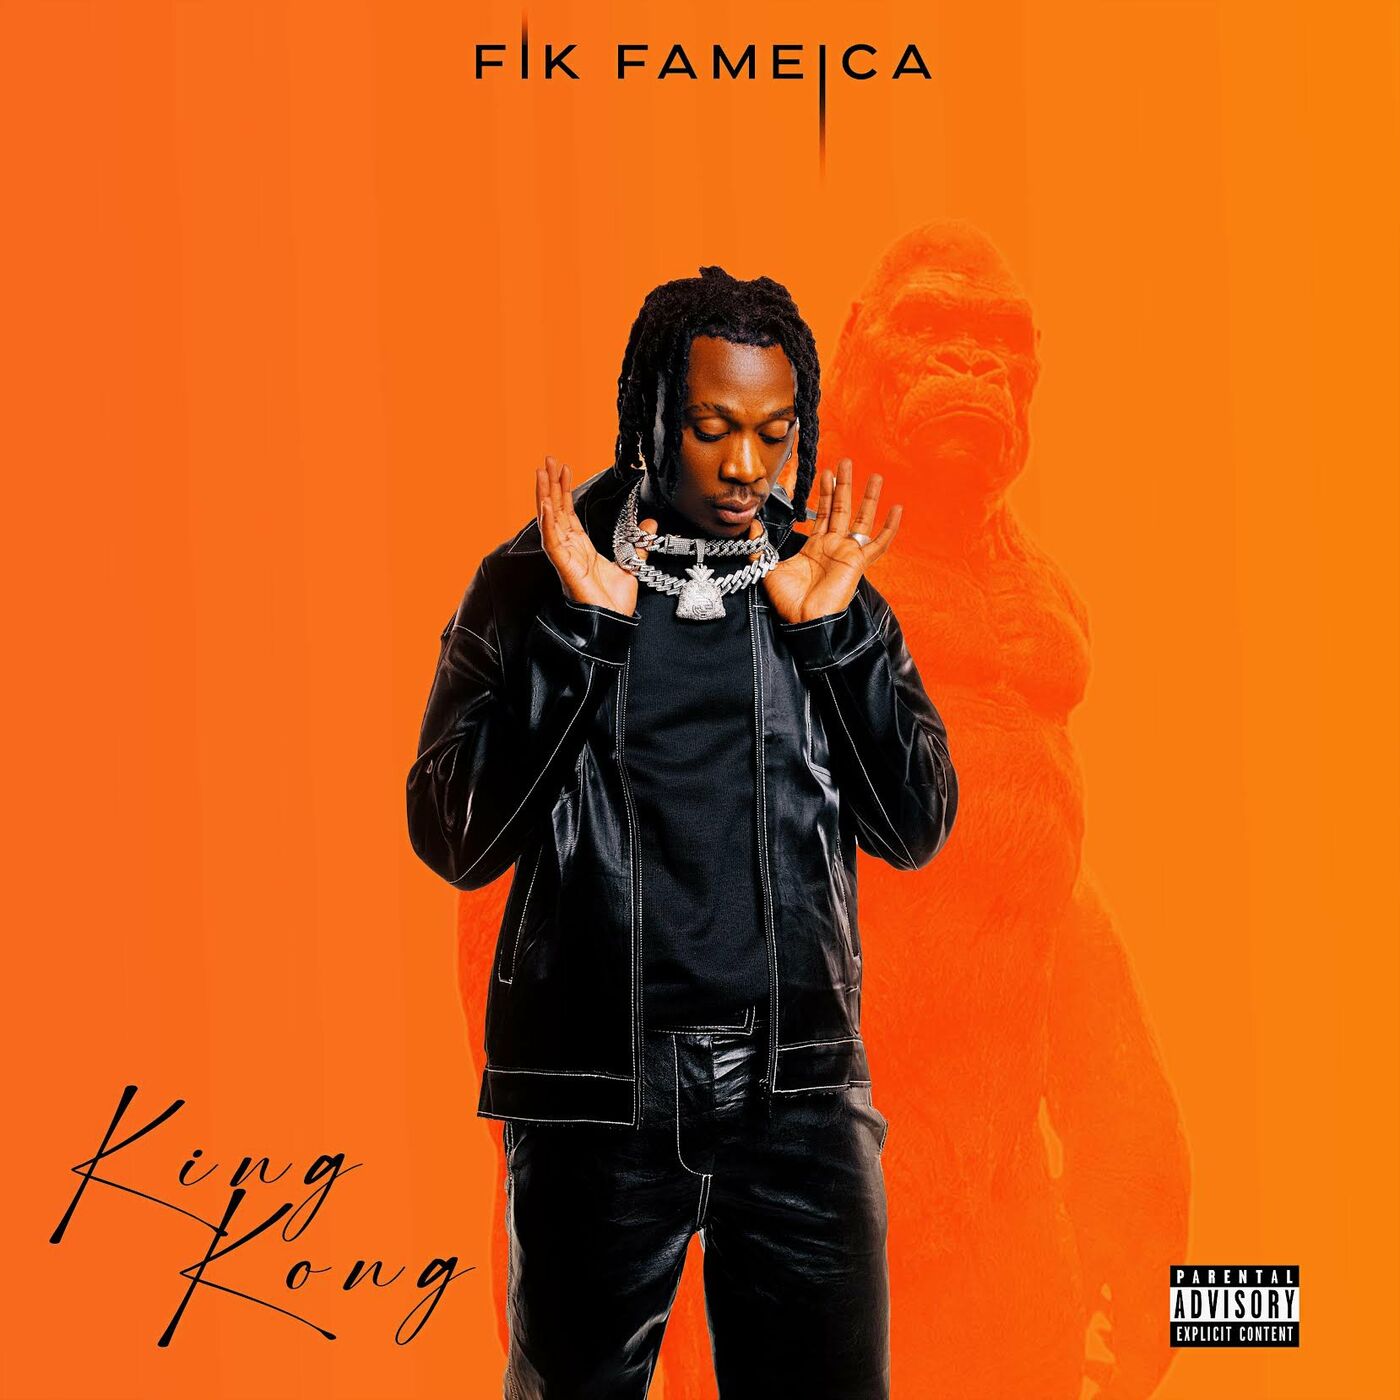 fik-fameica-lock-remix-album-cover